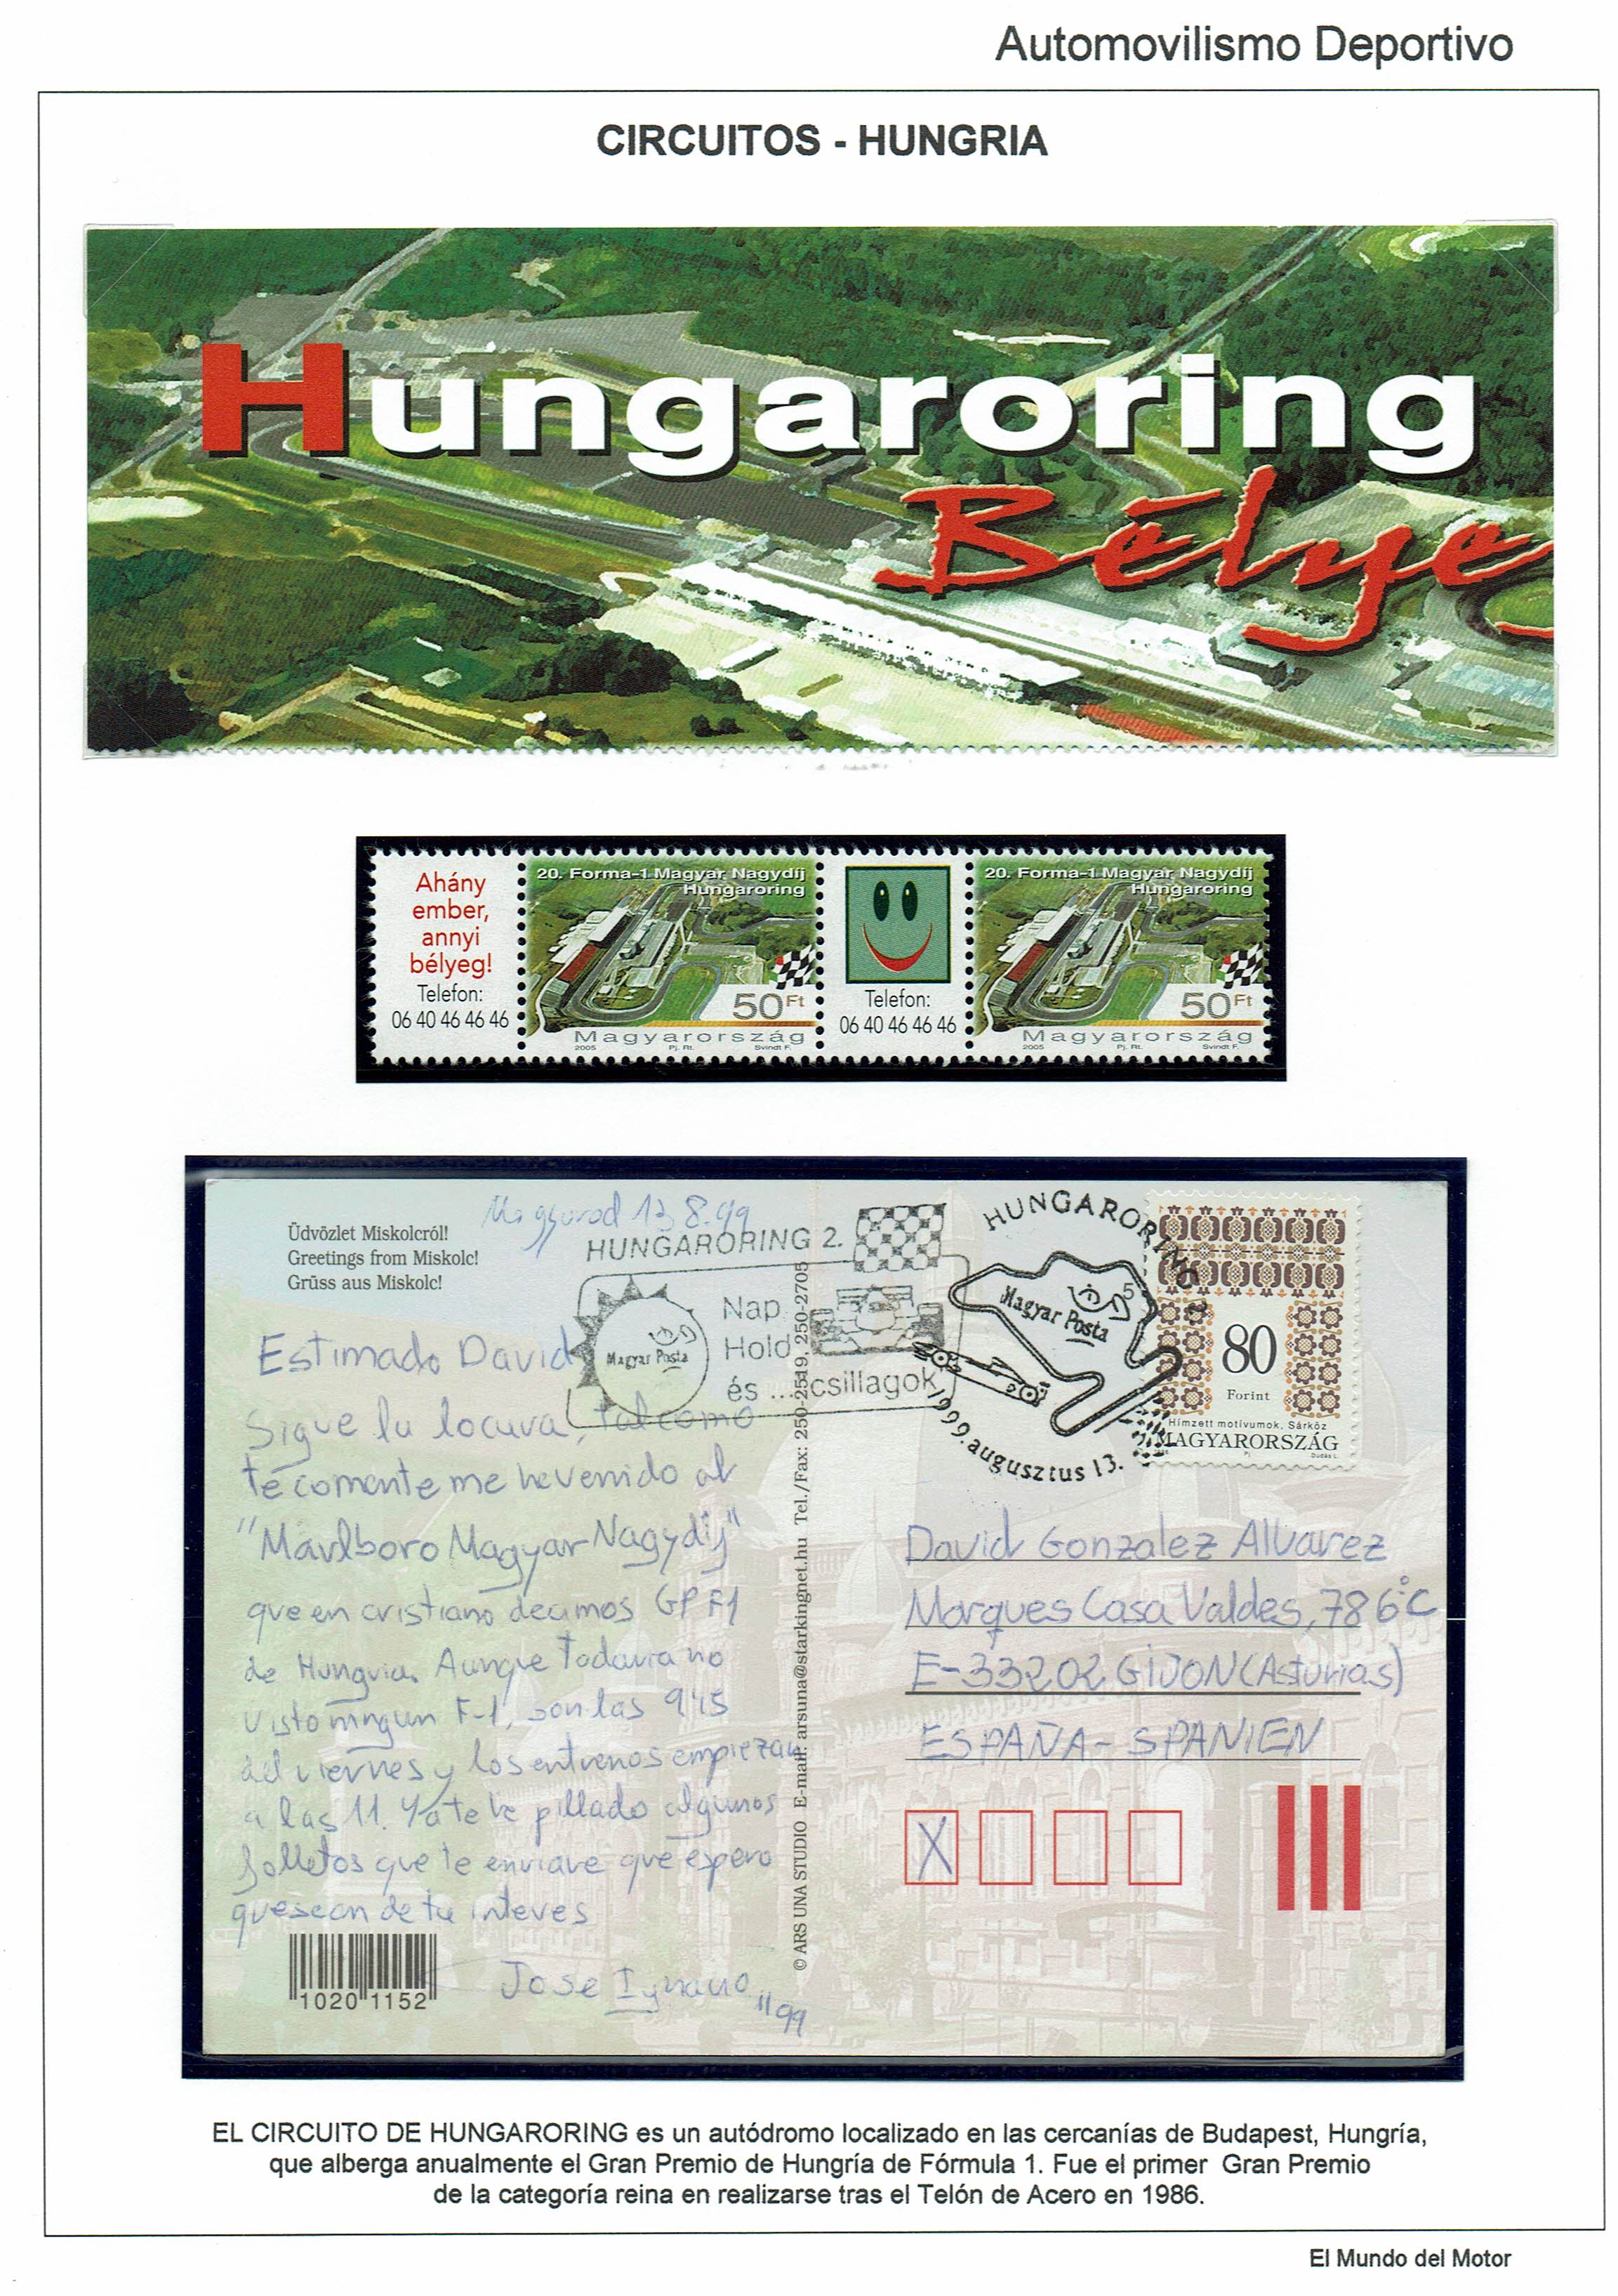 Hungaroring